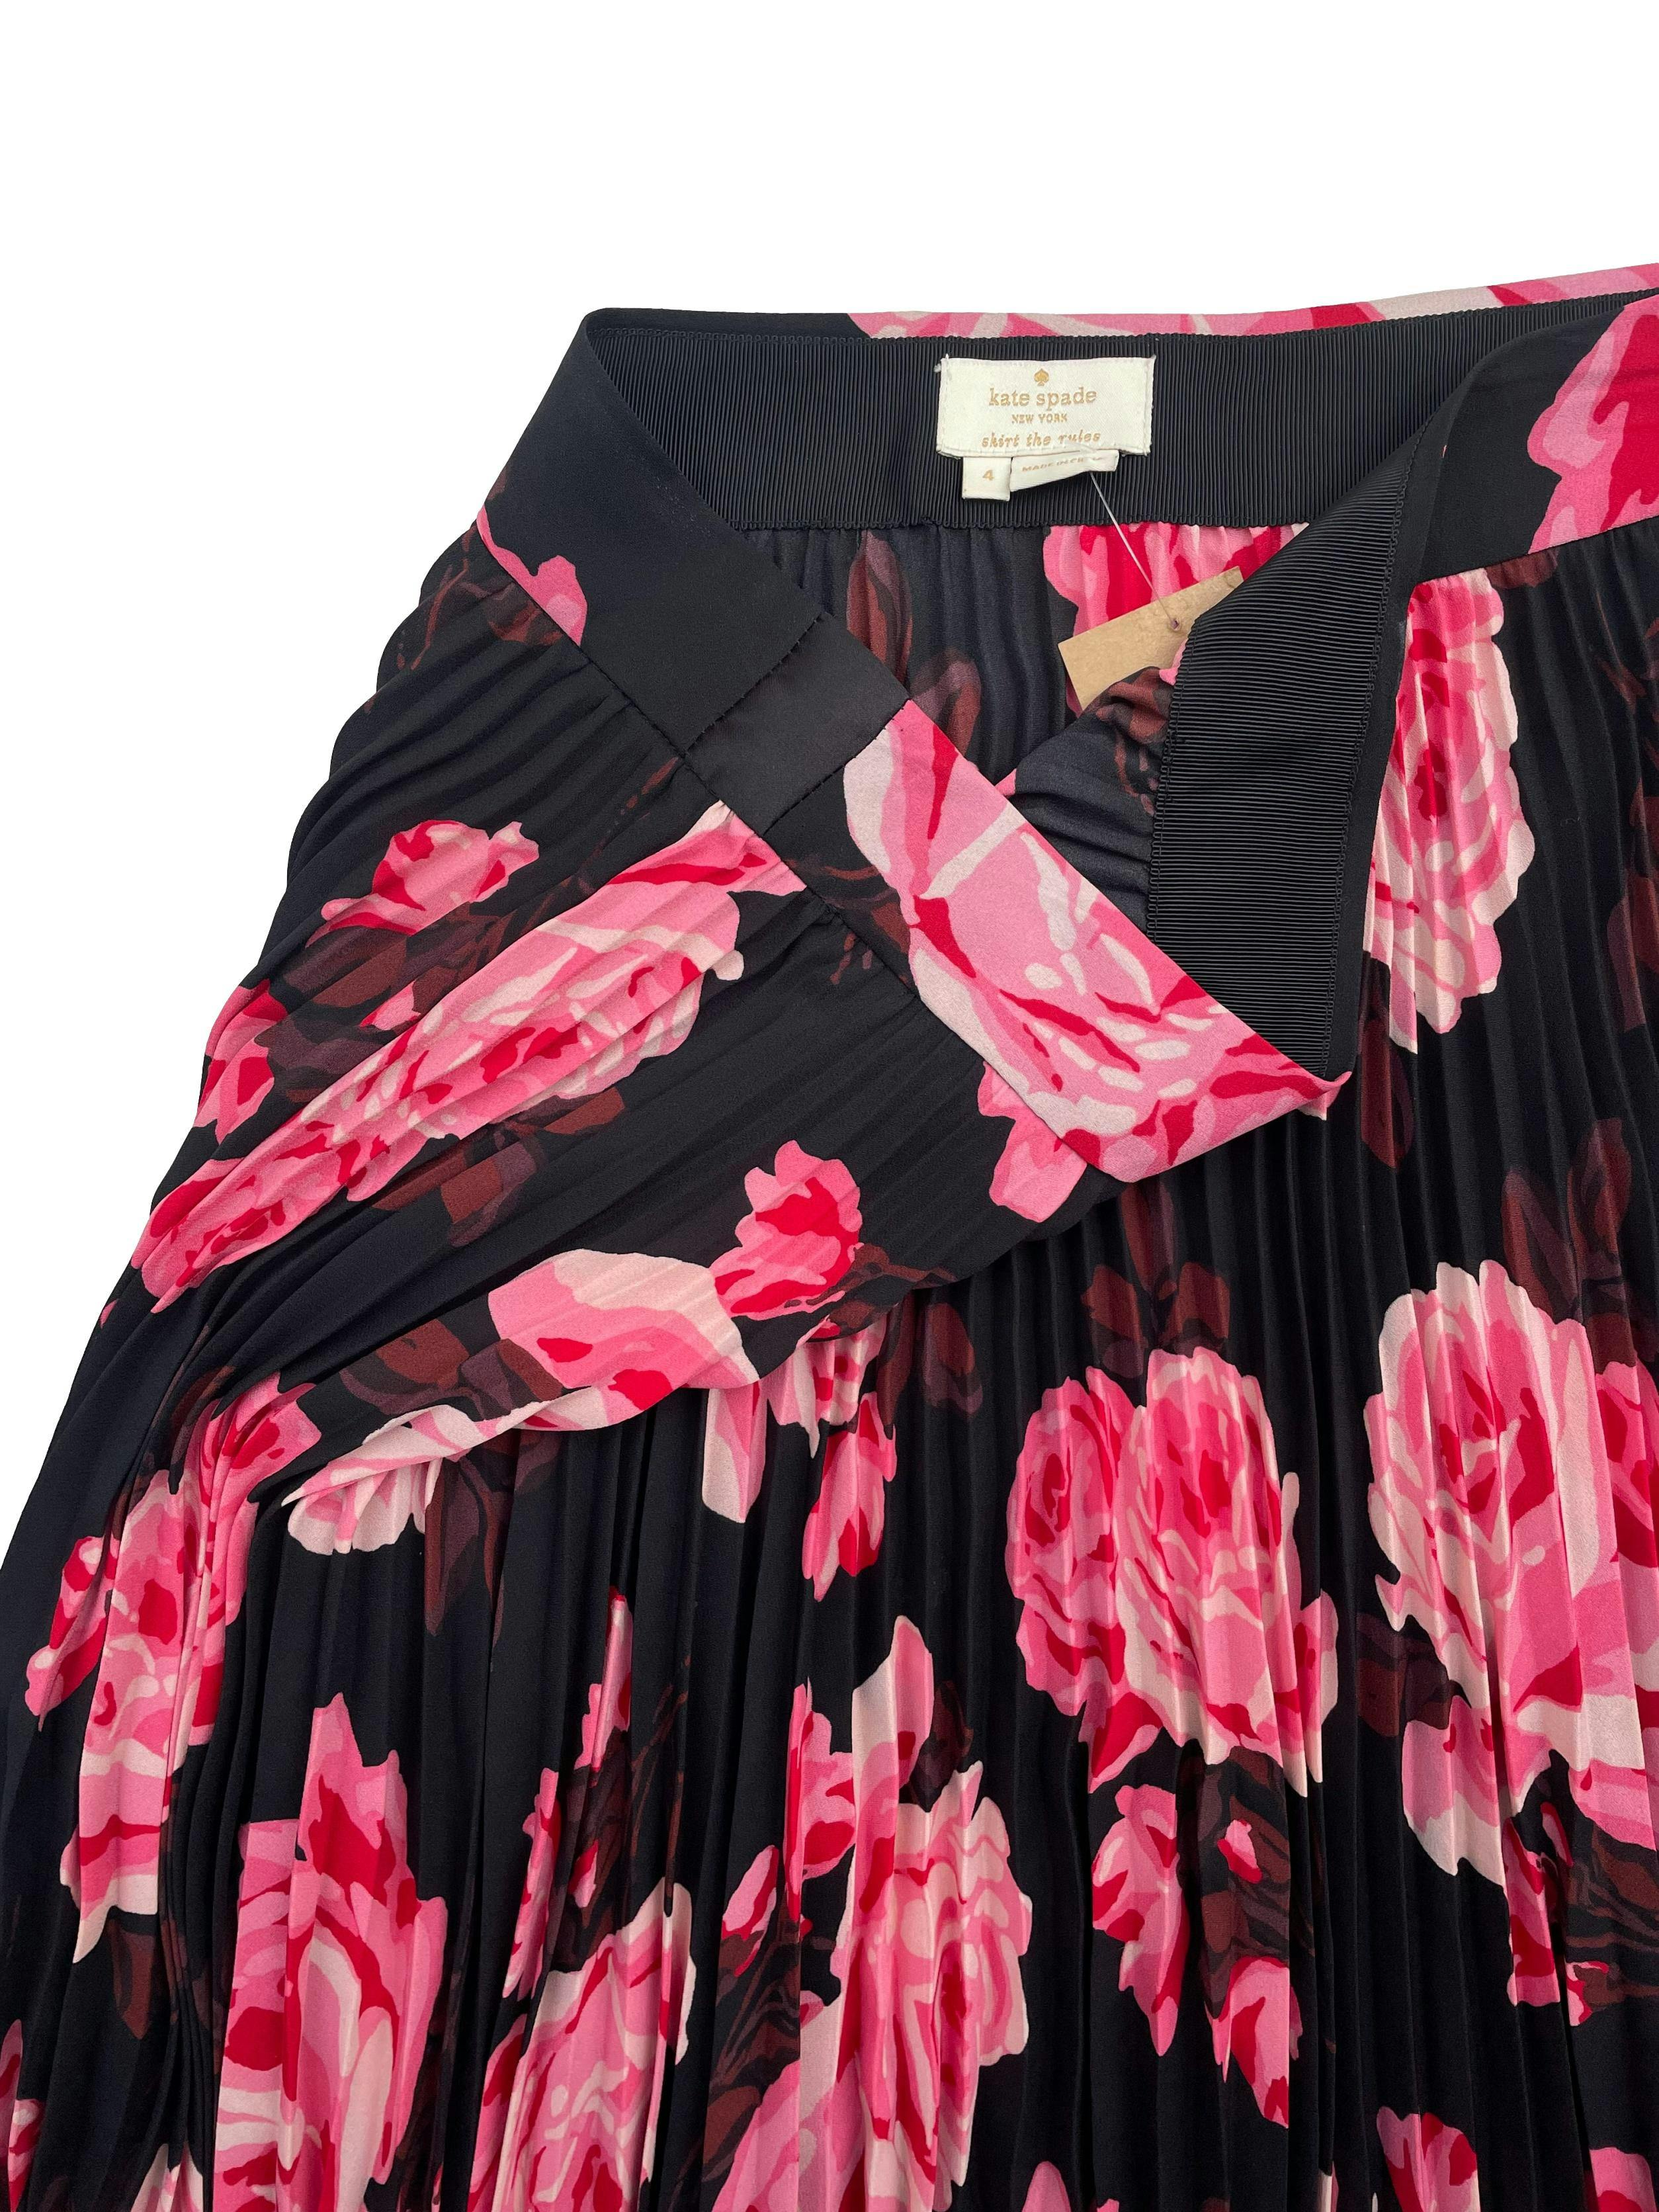 Falda midi Kate Spade negra con estampado de rosas, modelo plisado y cierre lateral. Precio original $250. Cintura 76cm, Largo 74cm.